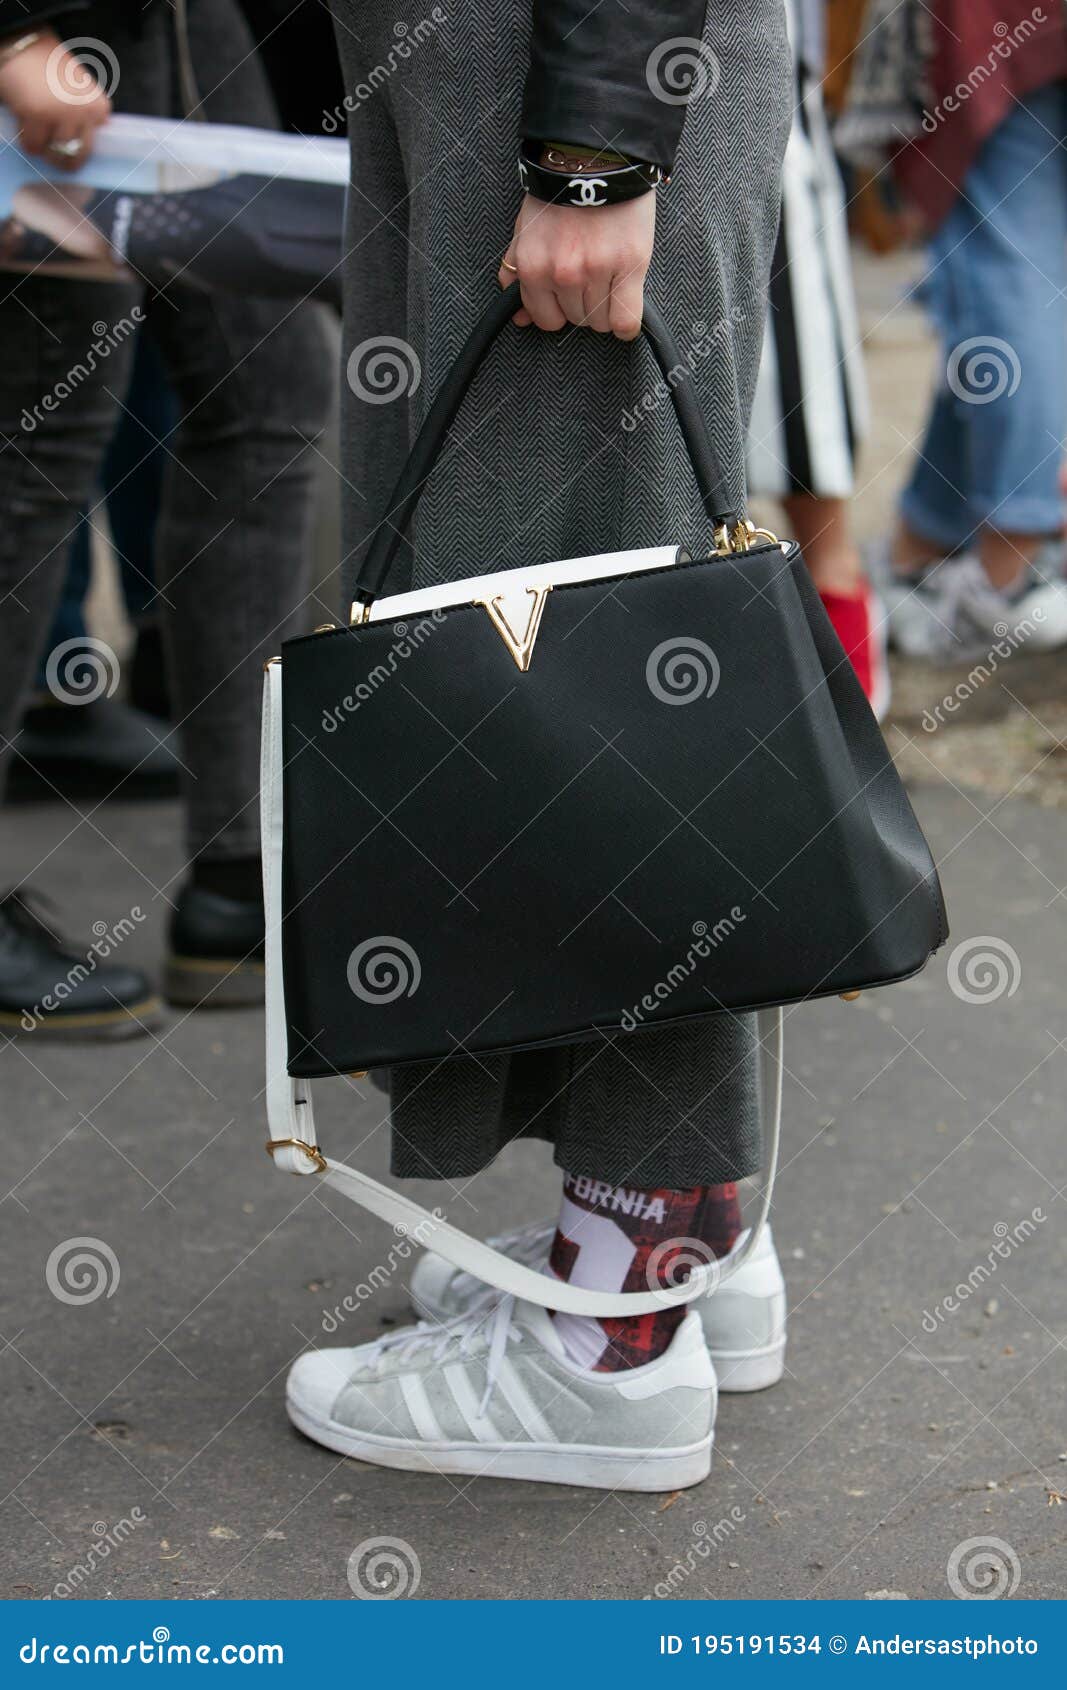 Botas Louis Vuitton En La Semana De La Moda De Milán 2018 Fotos, retratos,  imágenes y fotografía de archivo libres de derecho. Image 96498638